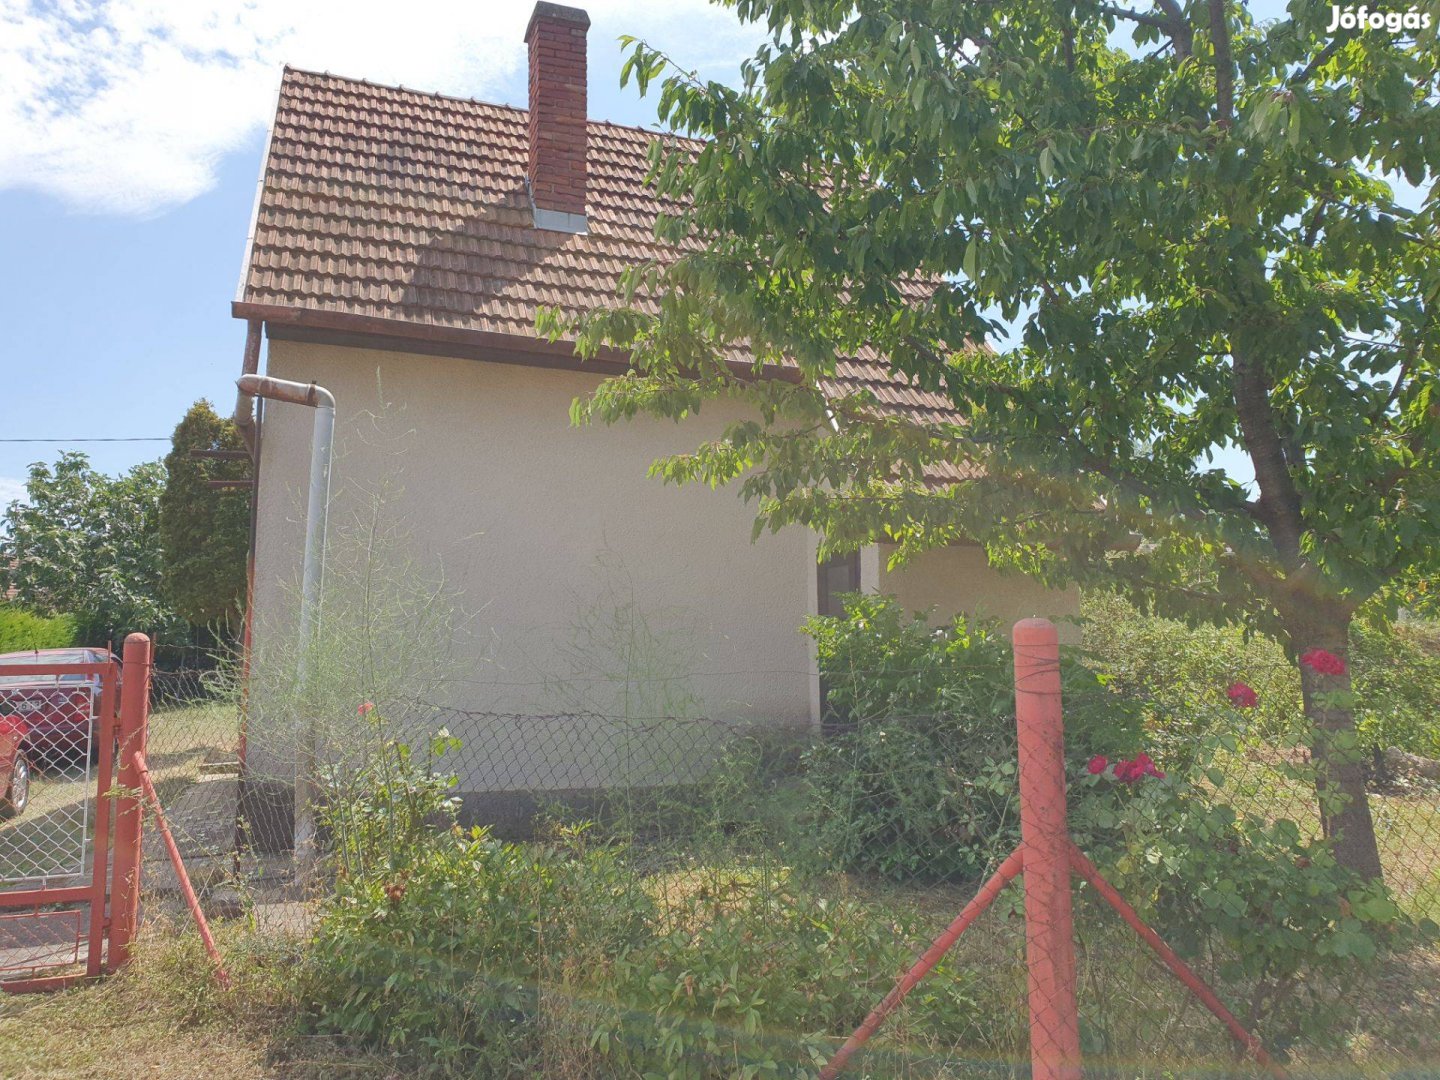 Eladó Keszüben egy 1606nm2-es belterületű teken 30 nm2 ház